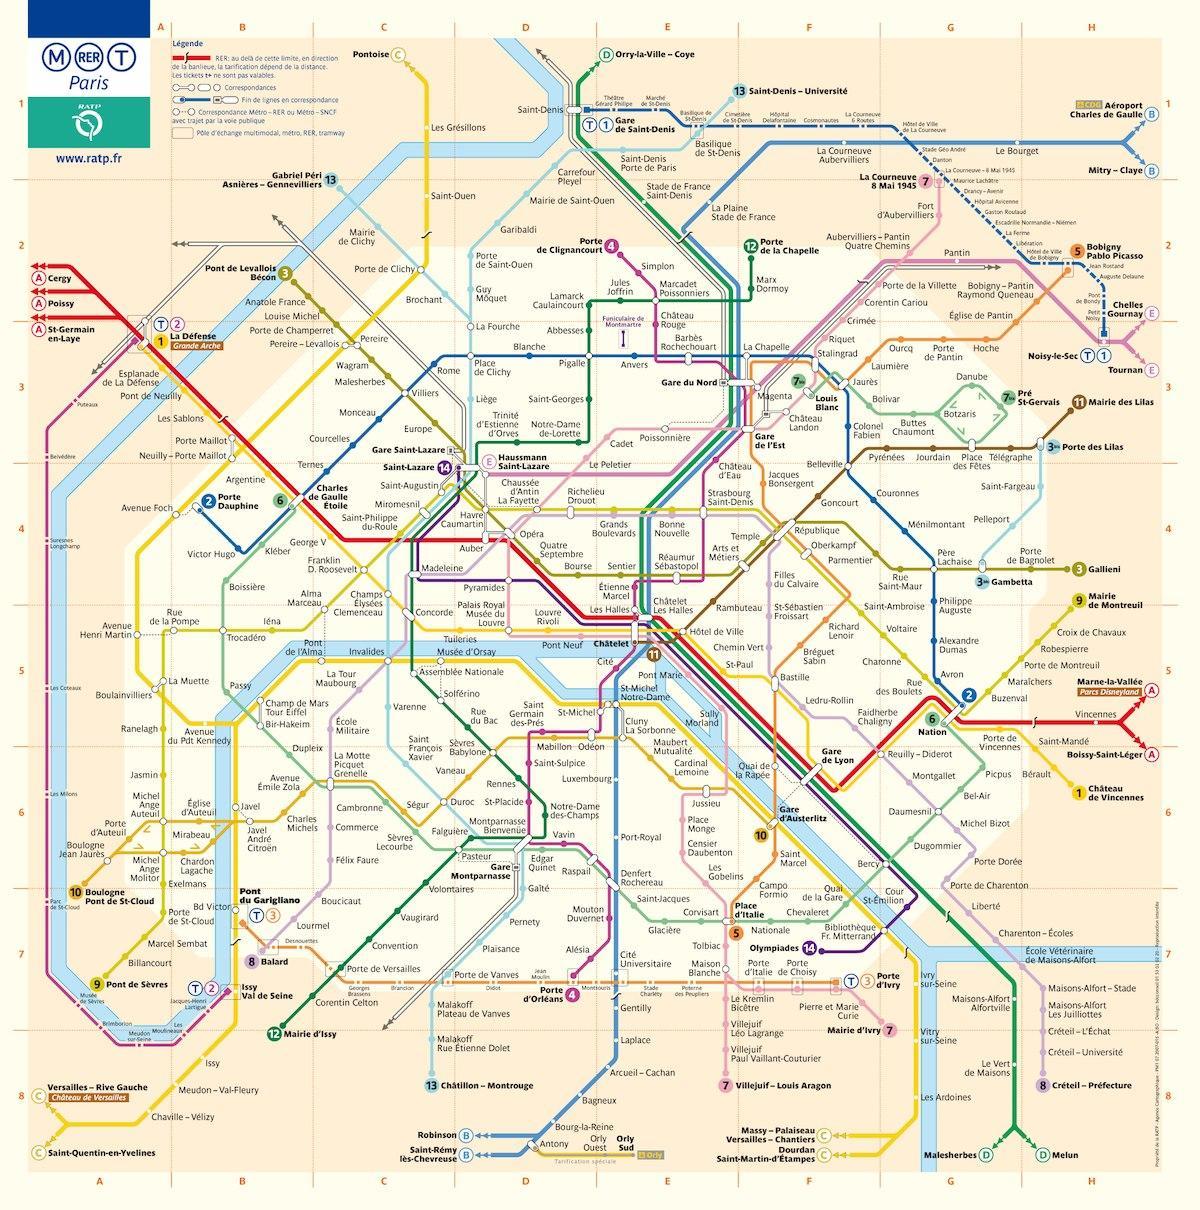 вашингтон дс метроны газрын зураг бүхий гудамж